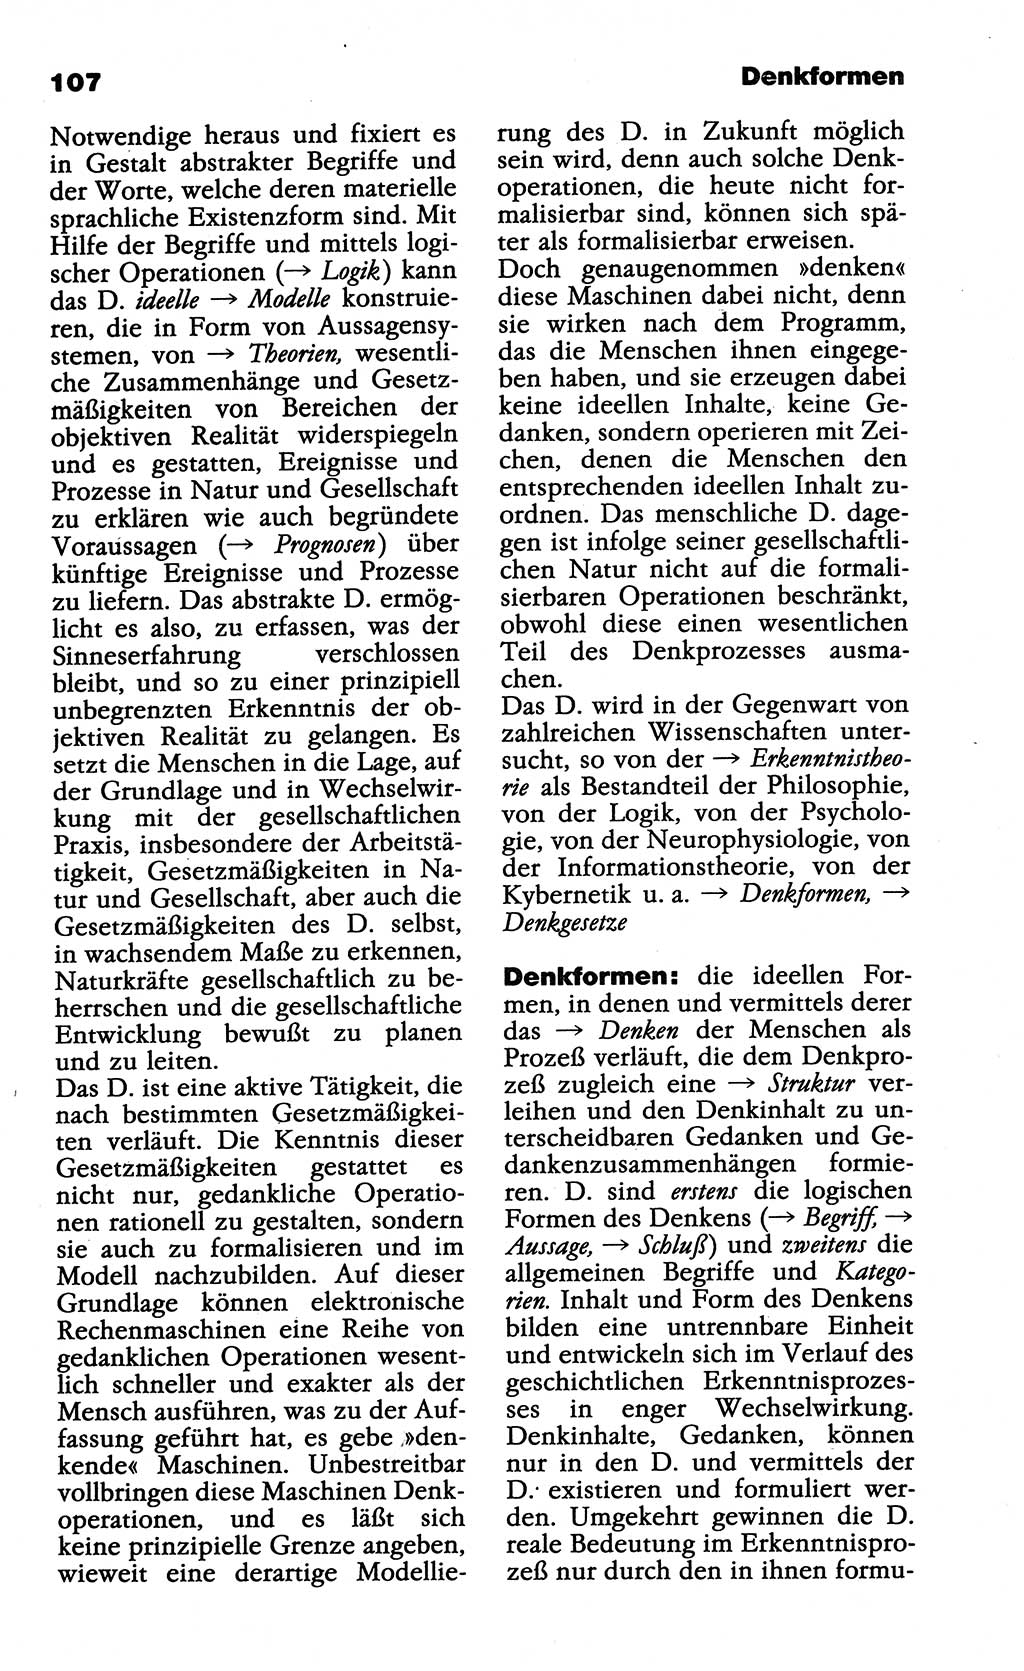 Wörterbuch der marxistisch-leninistischen Philosophie [Deutsche Demokratische Republik (DDR)] 1985, Seite 107 (Wb. ML Phil. DDR 1985, S. 107)